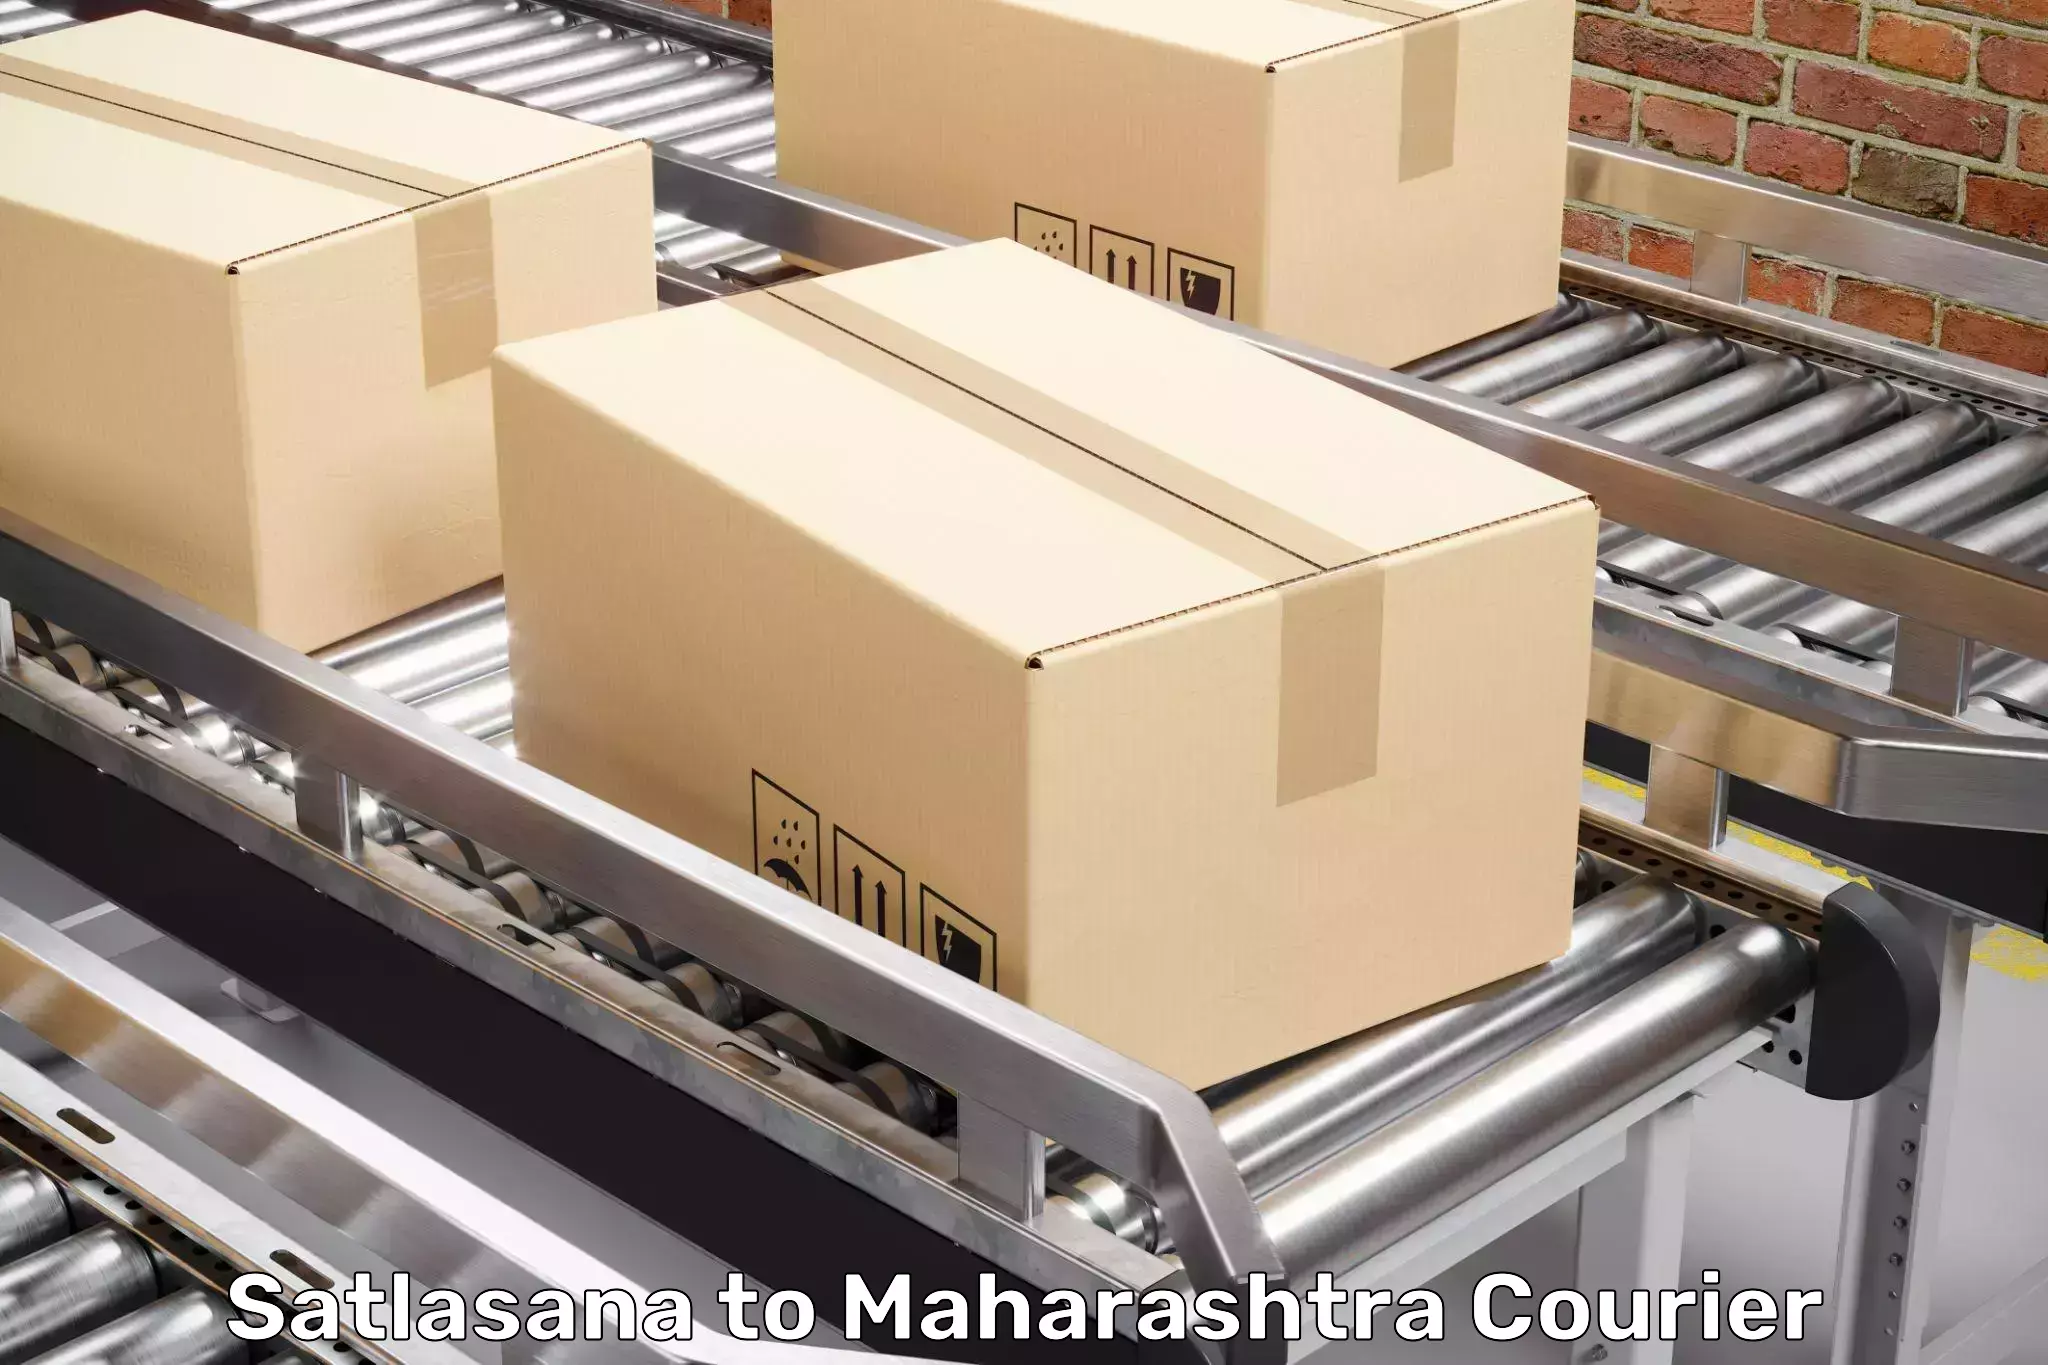 Furniture moving experts Satlasana to Maharashtra